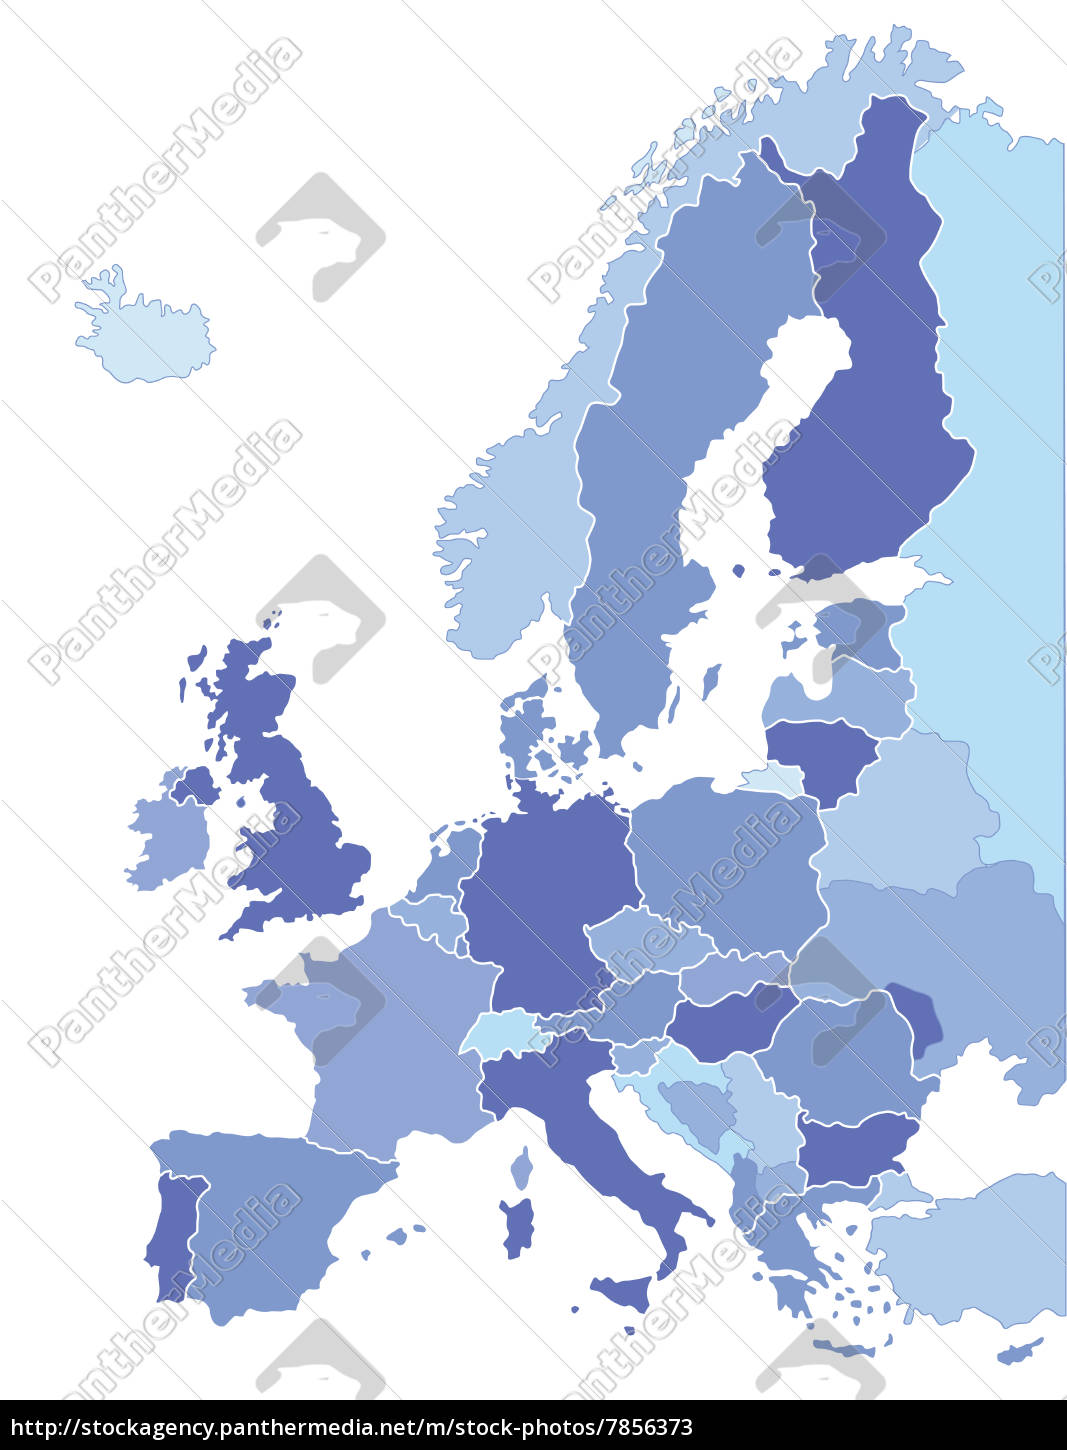 Europakarte - Stockfoto - #7856373 | Bildagentur PantherMedia